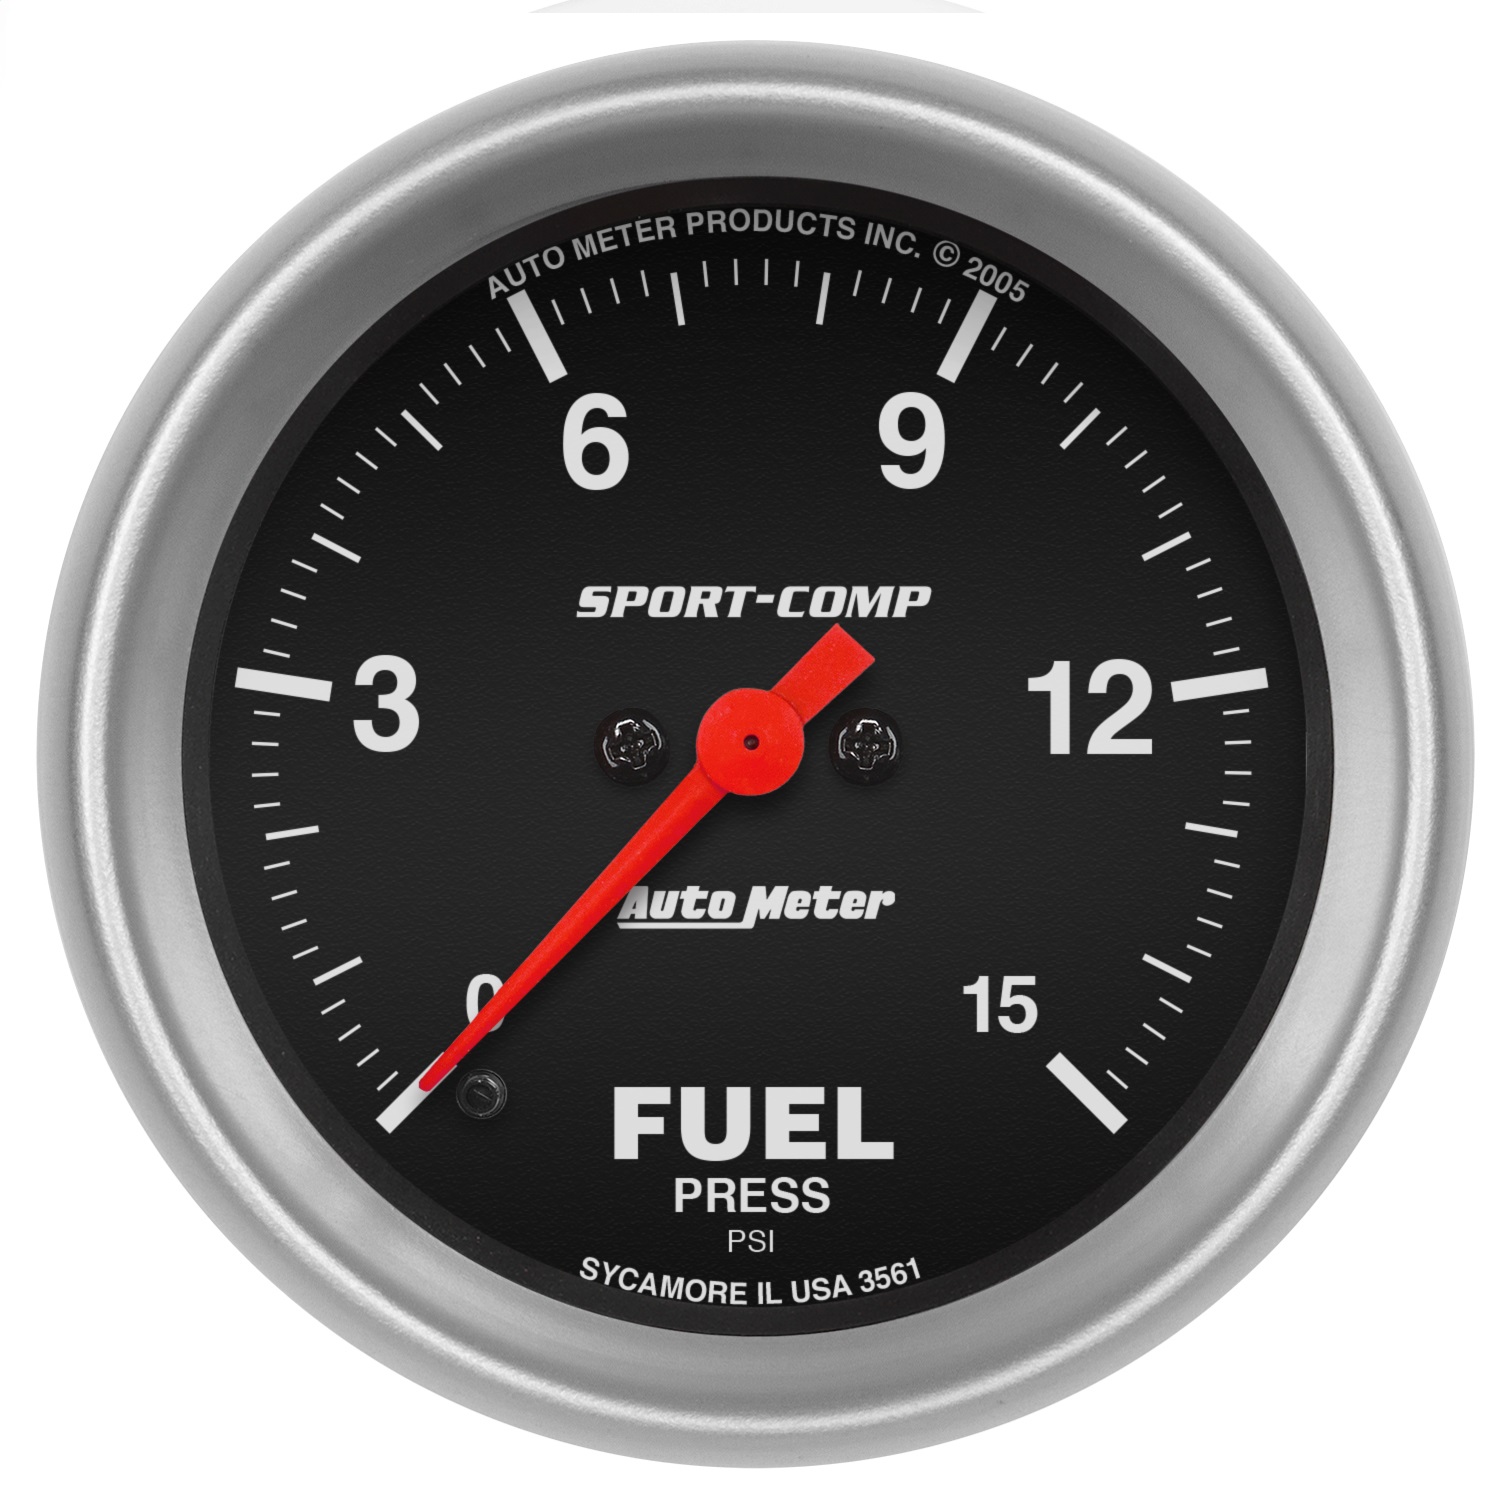 Auto Meter Auto Meter 3561 Sport-Comp; Electric Fuel Pressure Gauge